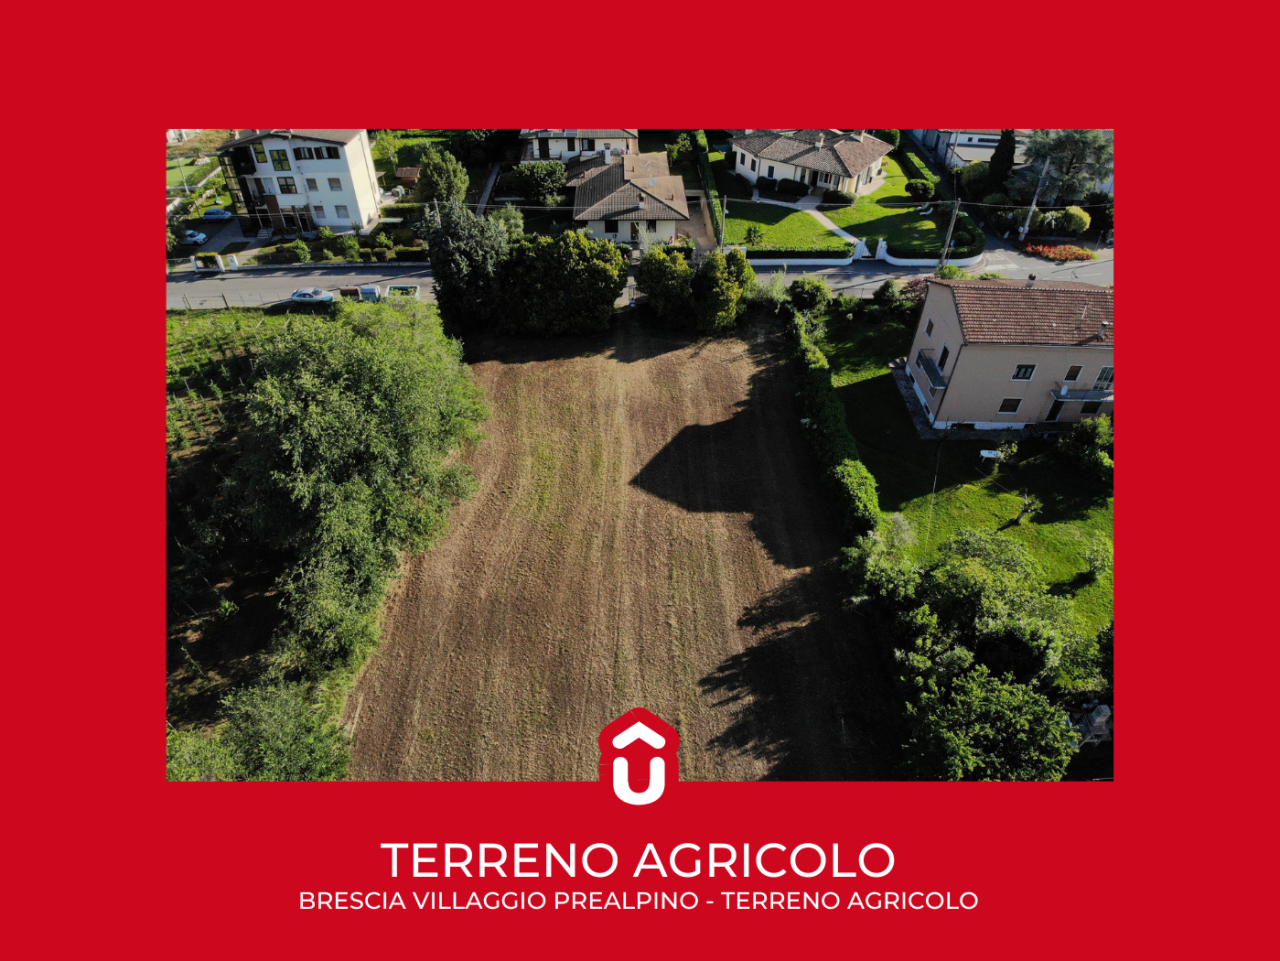 Terreno Agricolo in vendita a Brescia, 1 locali, prezzo € 160.000 | PortaleAgenzieImmobiliari.it